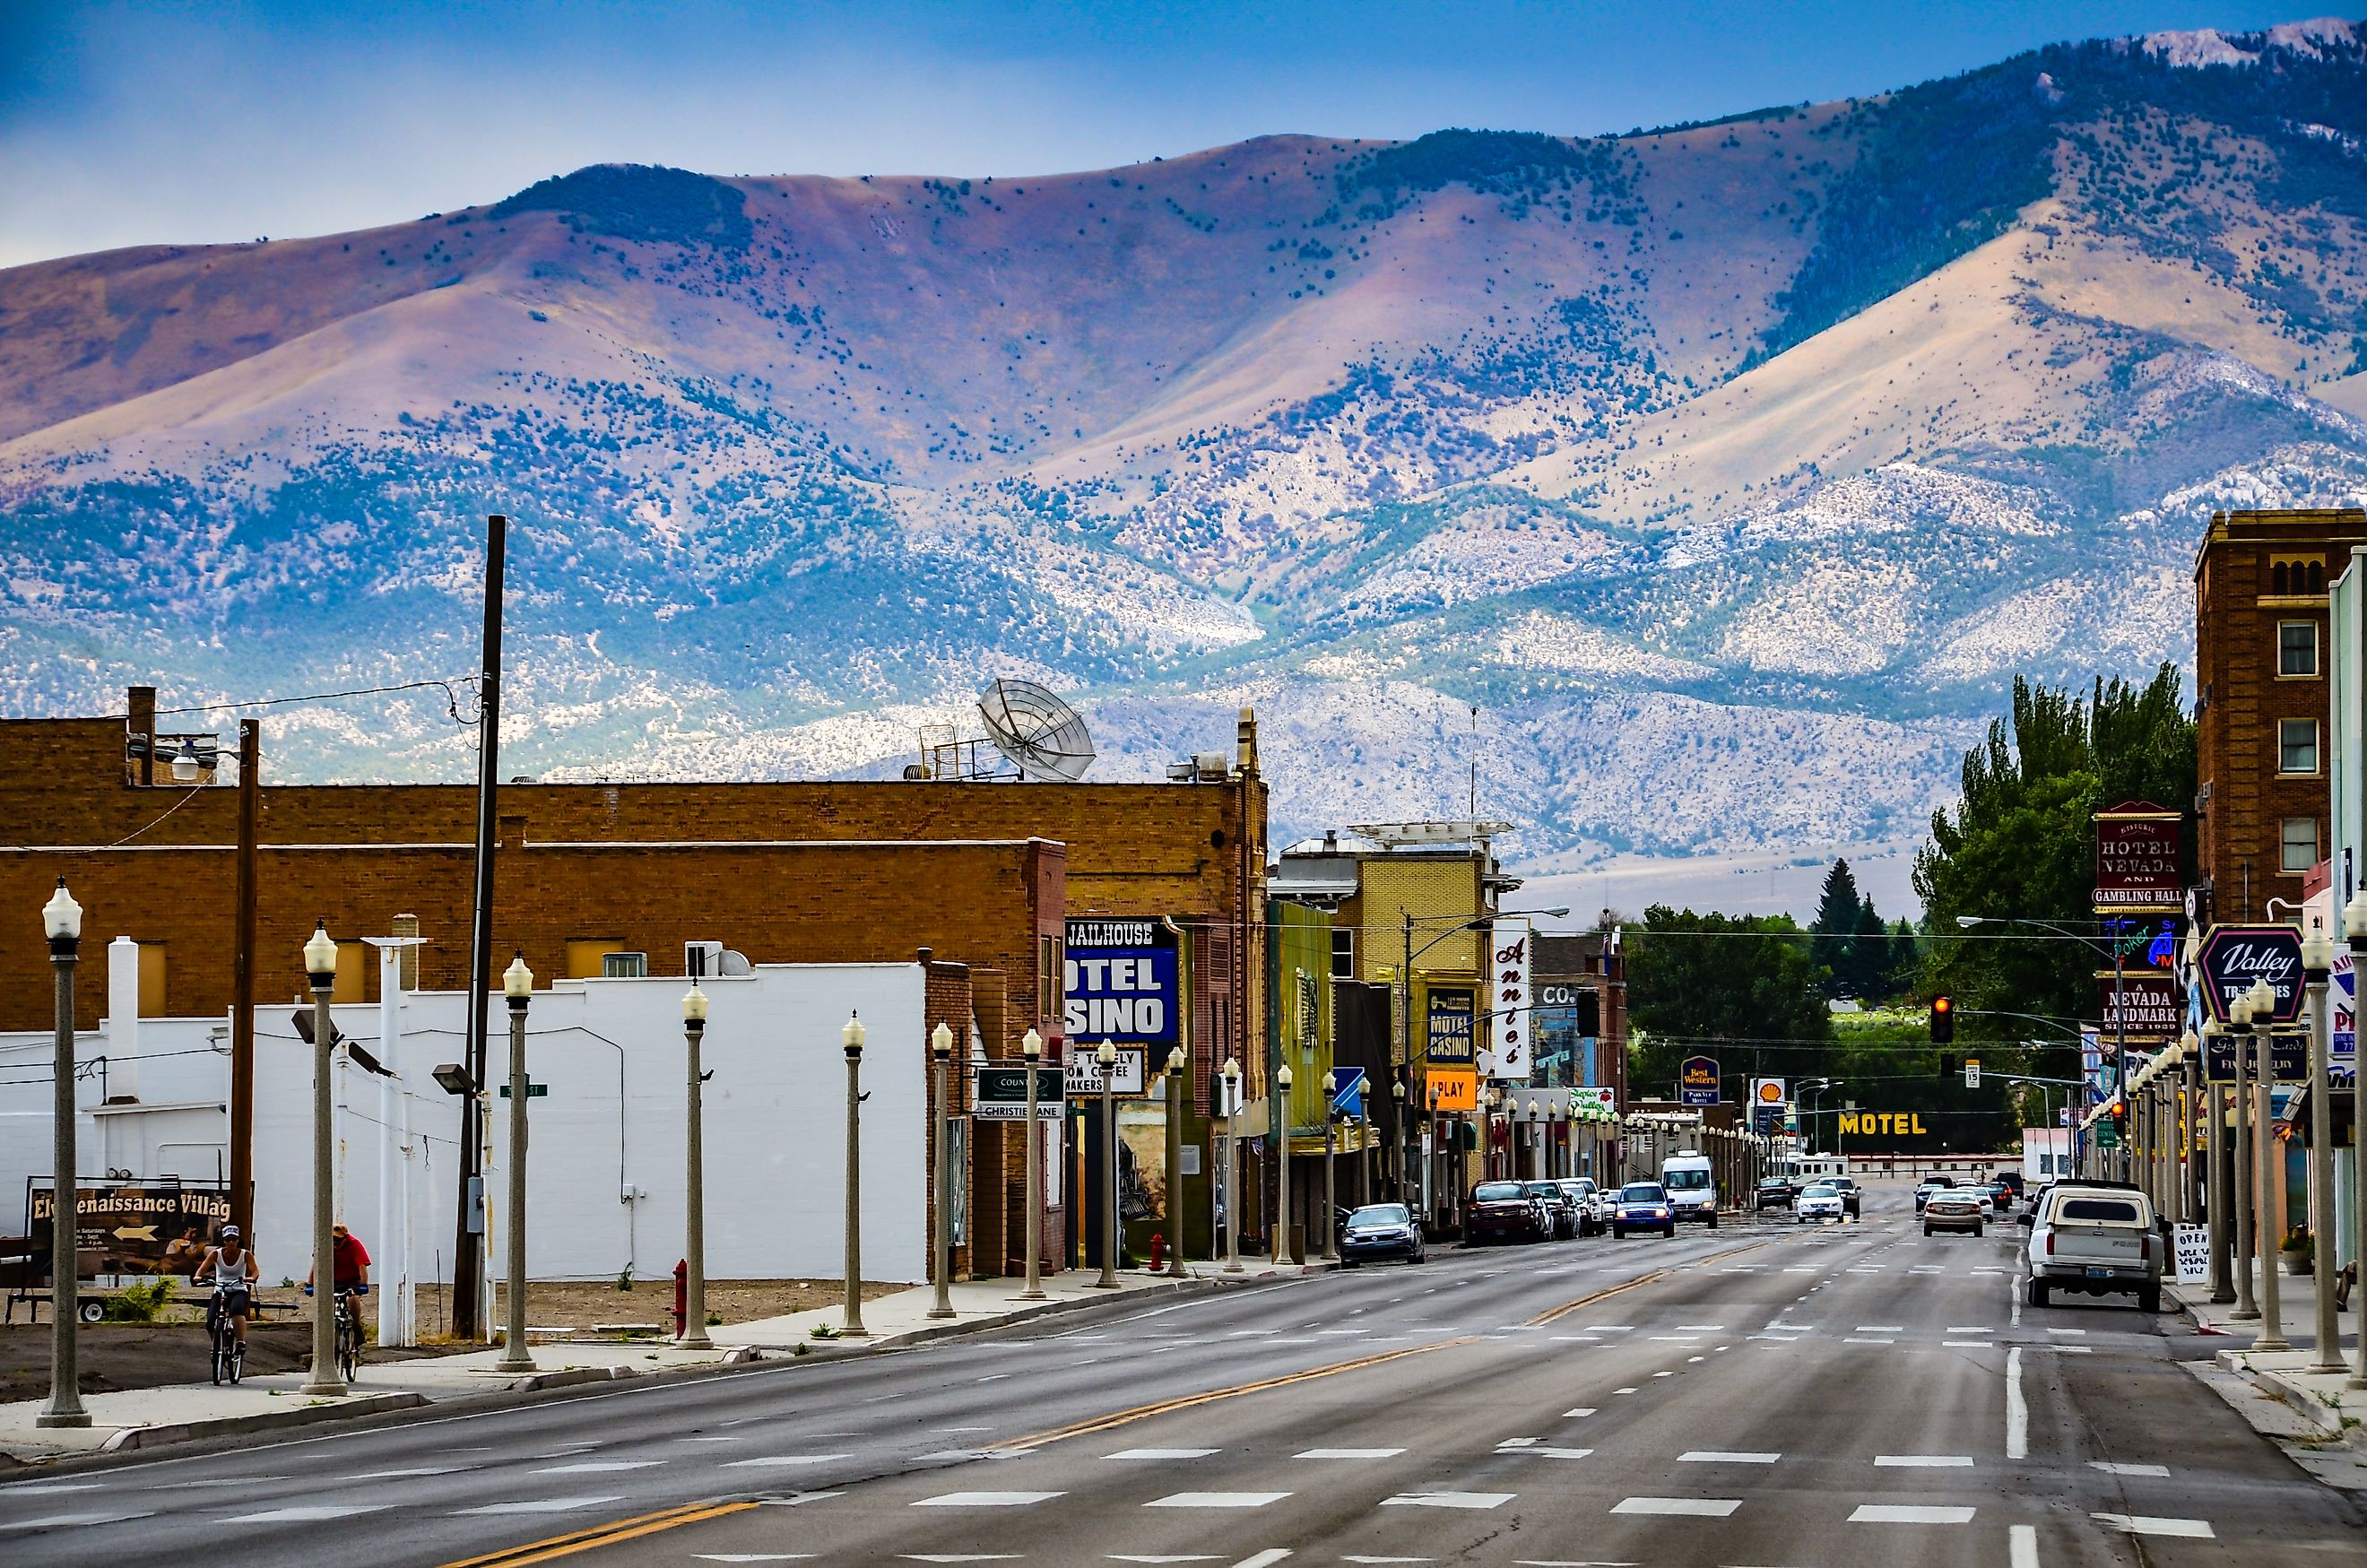 Main Street in Ely, Nevada. Editorial credit: Sandra Foyt / Shutterstock.com